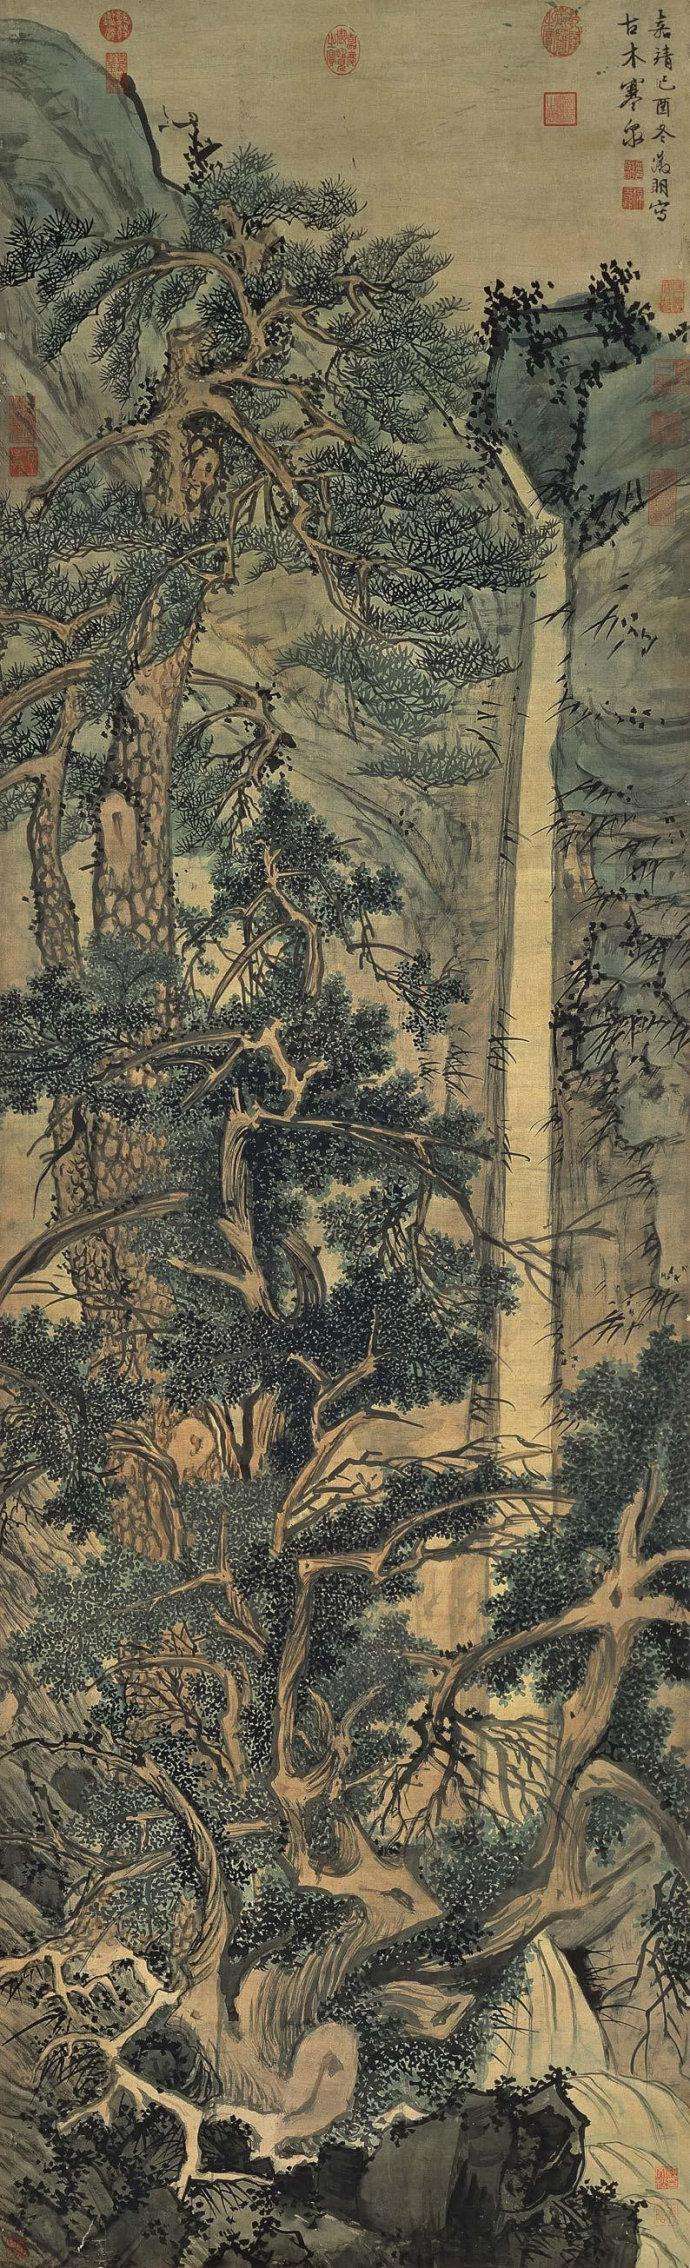 文徵明《古木寒泉图》台北故宫博物院藏